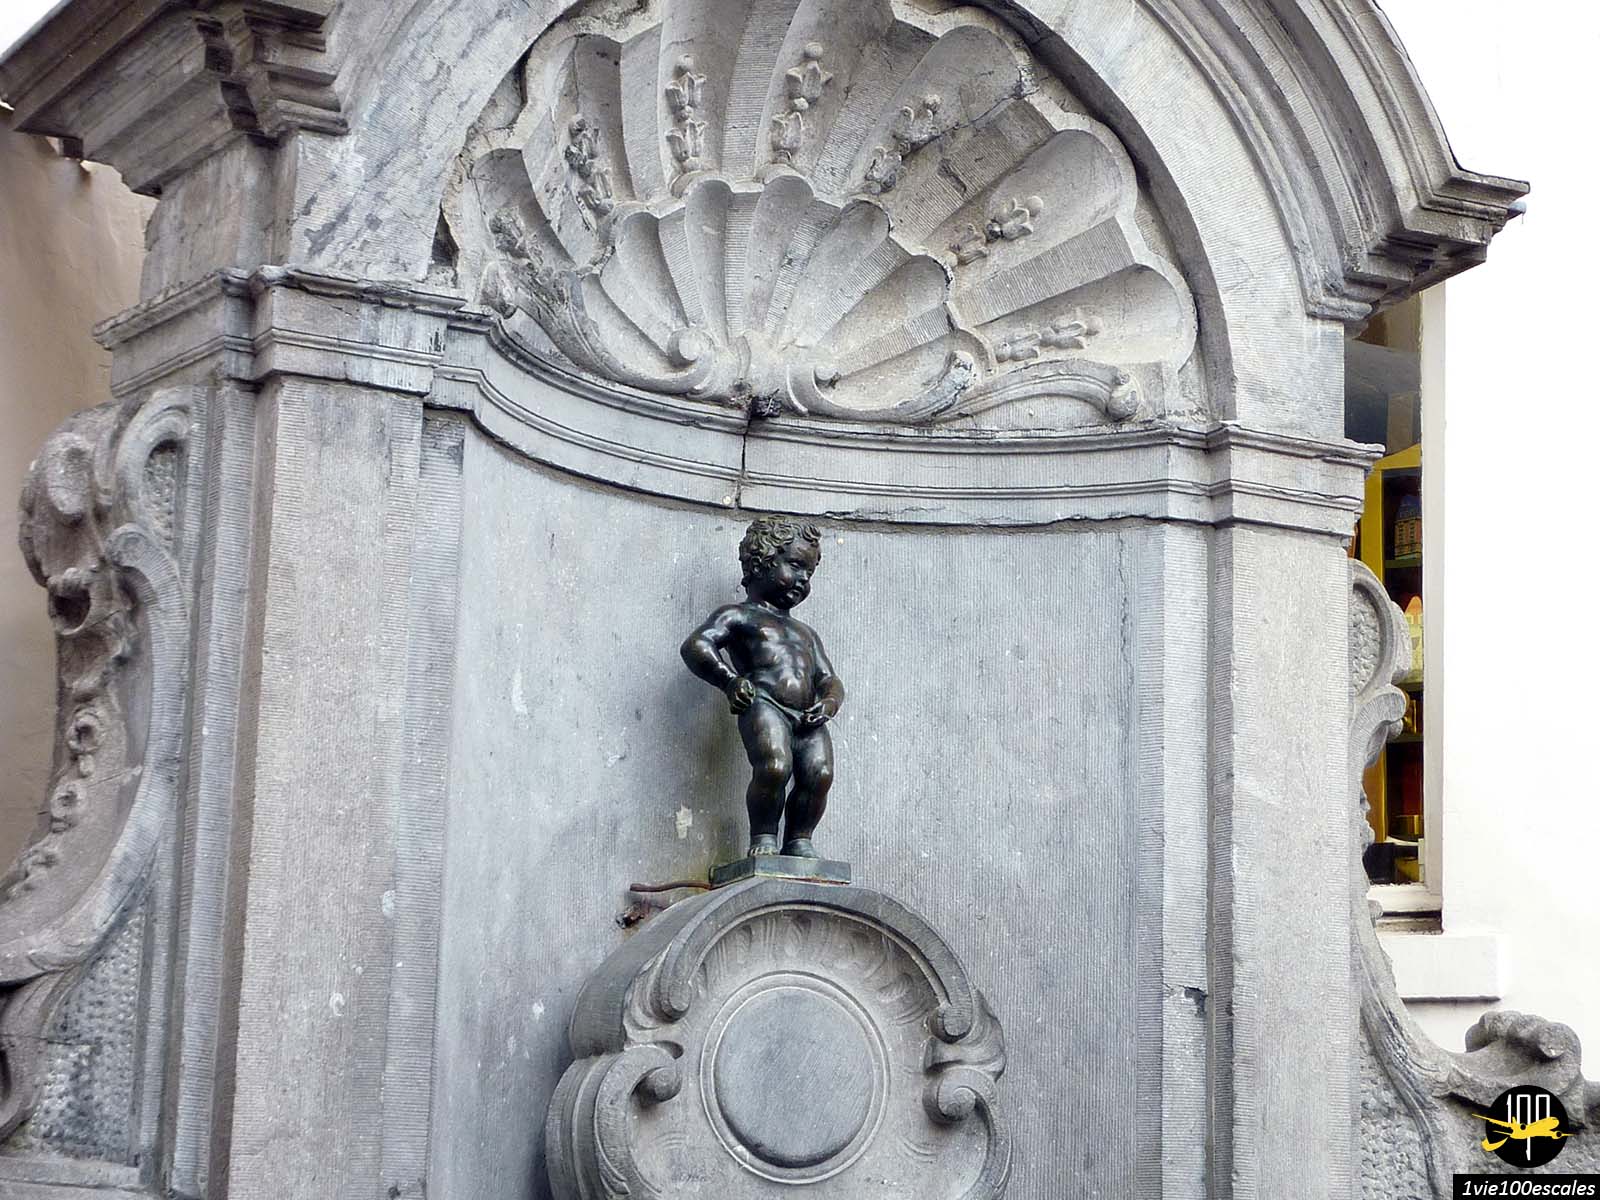 Véritable symbole de la ville de Bruxelles dans le monde entier, le Manneken pis, autrement connu sous le nom de Petit Julien surprend tous ceux qui l'aperçoivent la première fois par sa petite taille